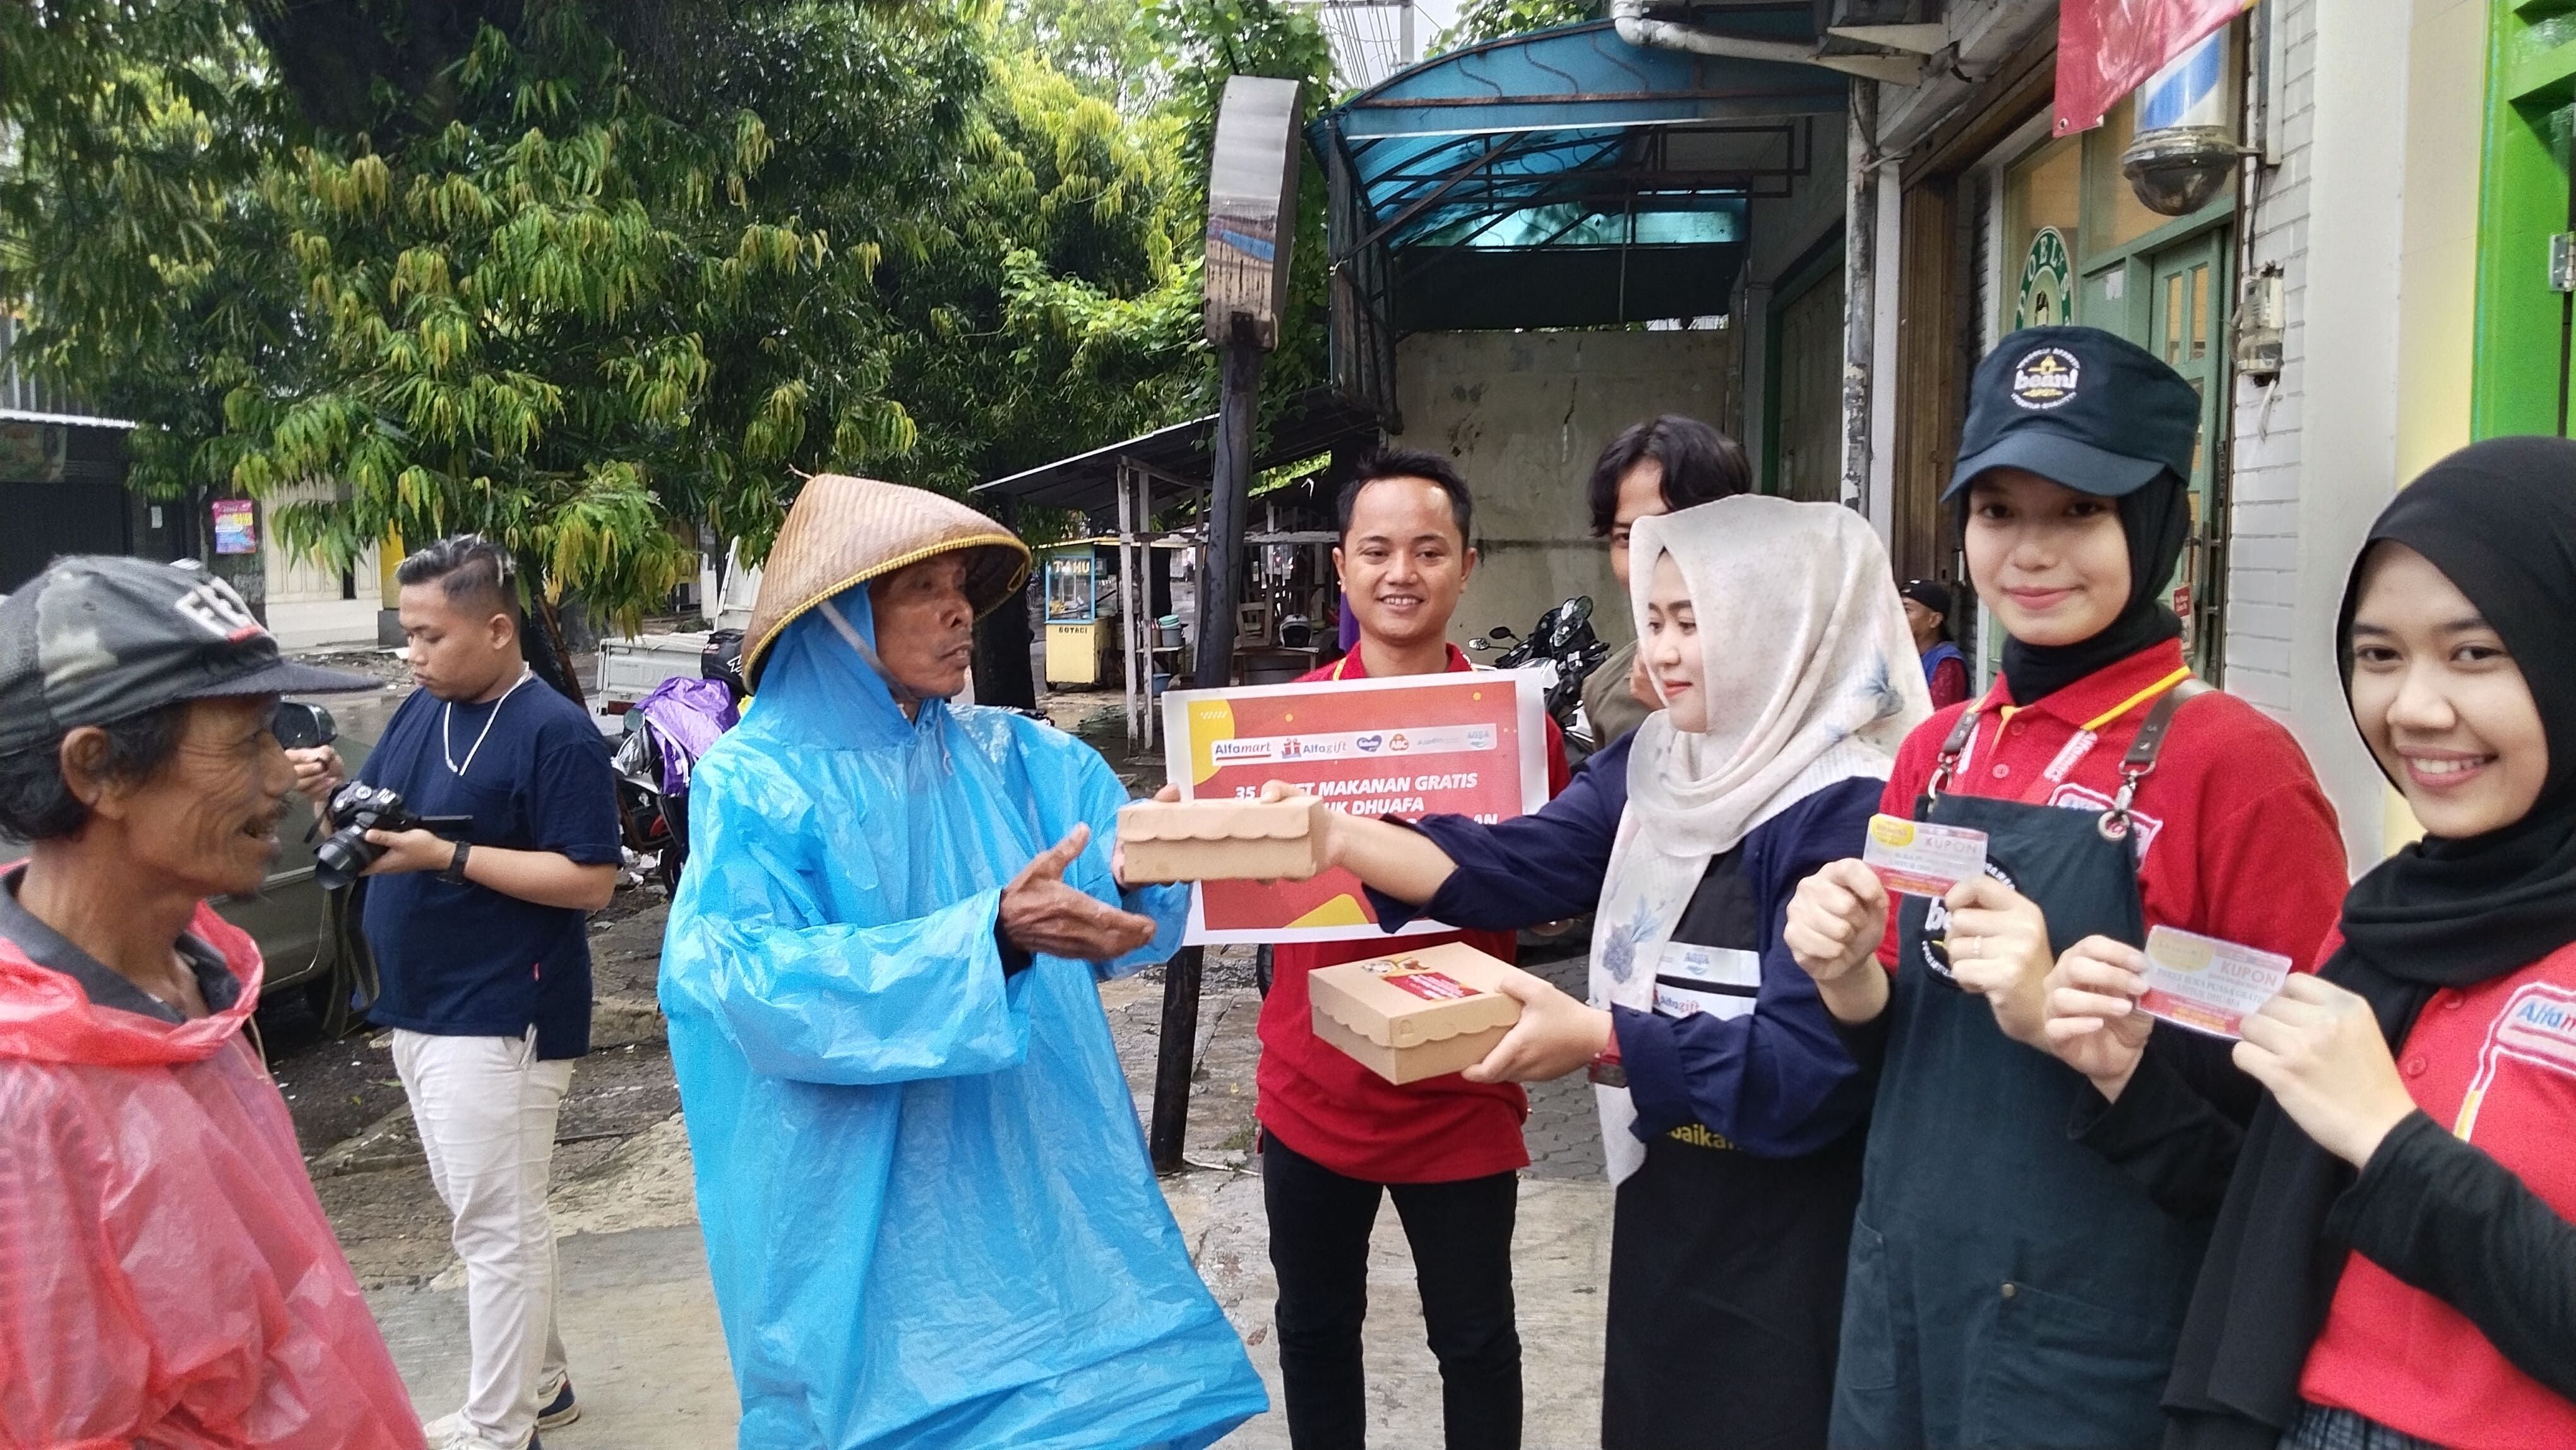 Program Warteg Gratis Alfamart 'Berbagi Kebaikan' bagikan paket buka puasa gratis untuk duafa di Tegal, tepatnya di Warteg Kharisma Kagok Jalan Mayjend Sutoyo, Slawi.